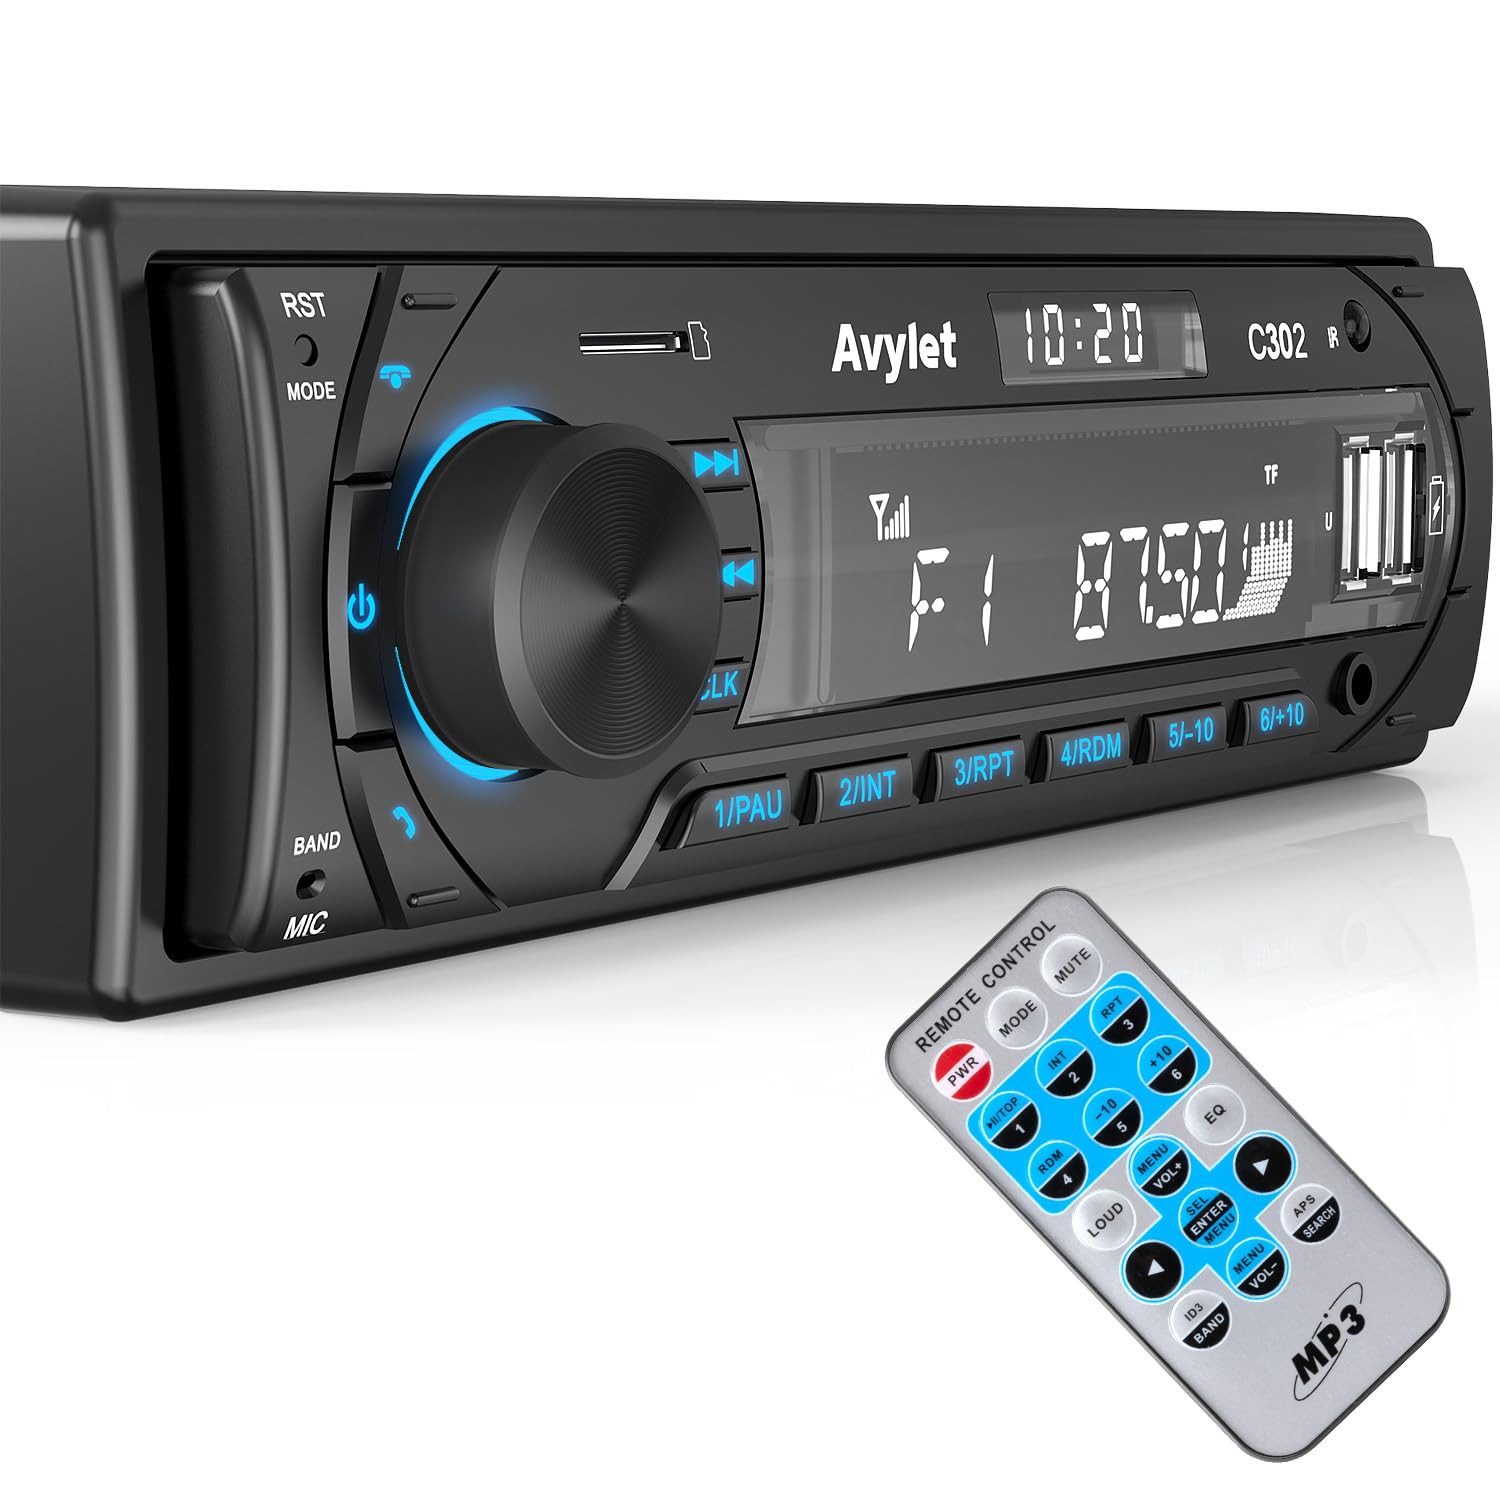 Avylet Autoradio Bluetooth mit 1 Din mit 2 USB/AUX/SD Karte/MP3-Player Autoradio (Hände frei,LCD mit Uhr,Anpassen des EQ-Sounds,Stromausfall speicher, Kompatible mit Lautsprecher, Smartphone,Android und iOS)